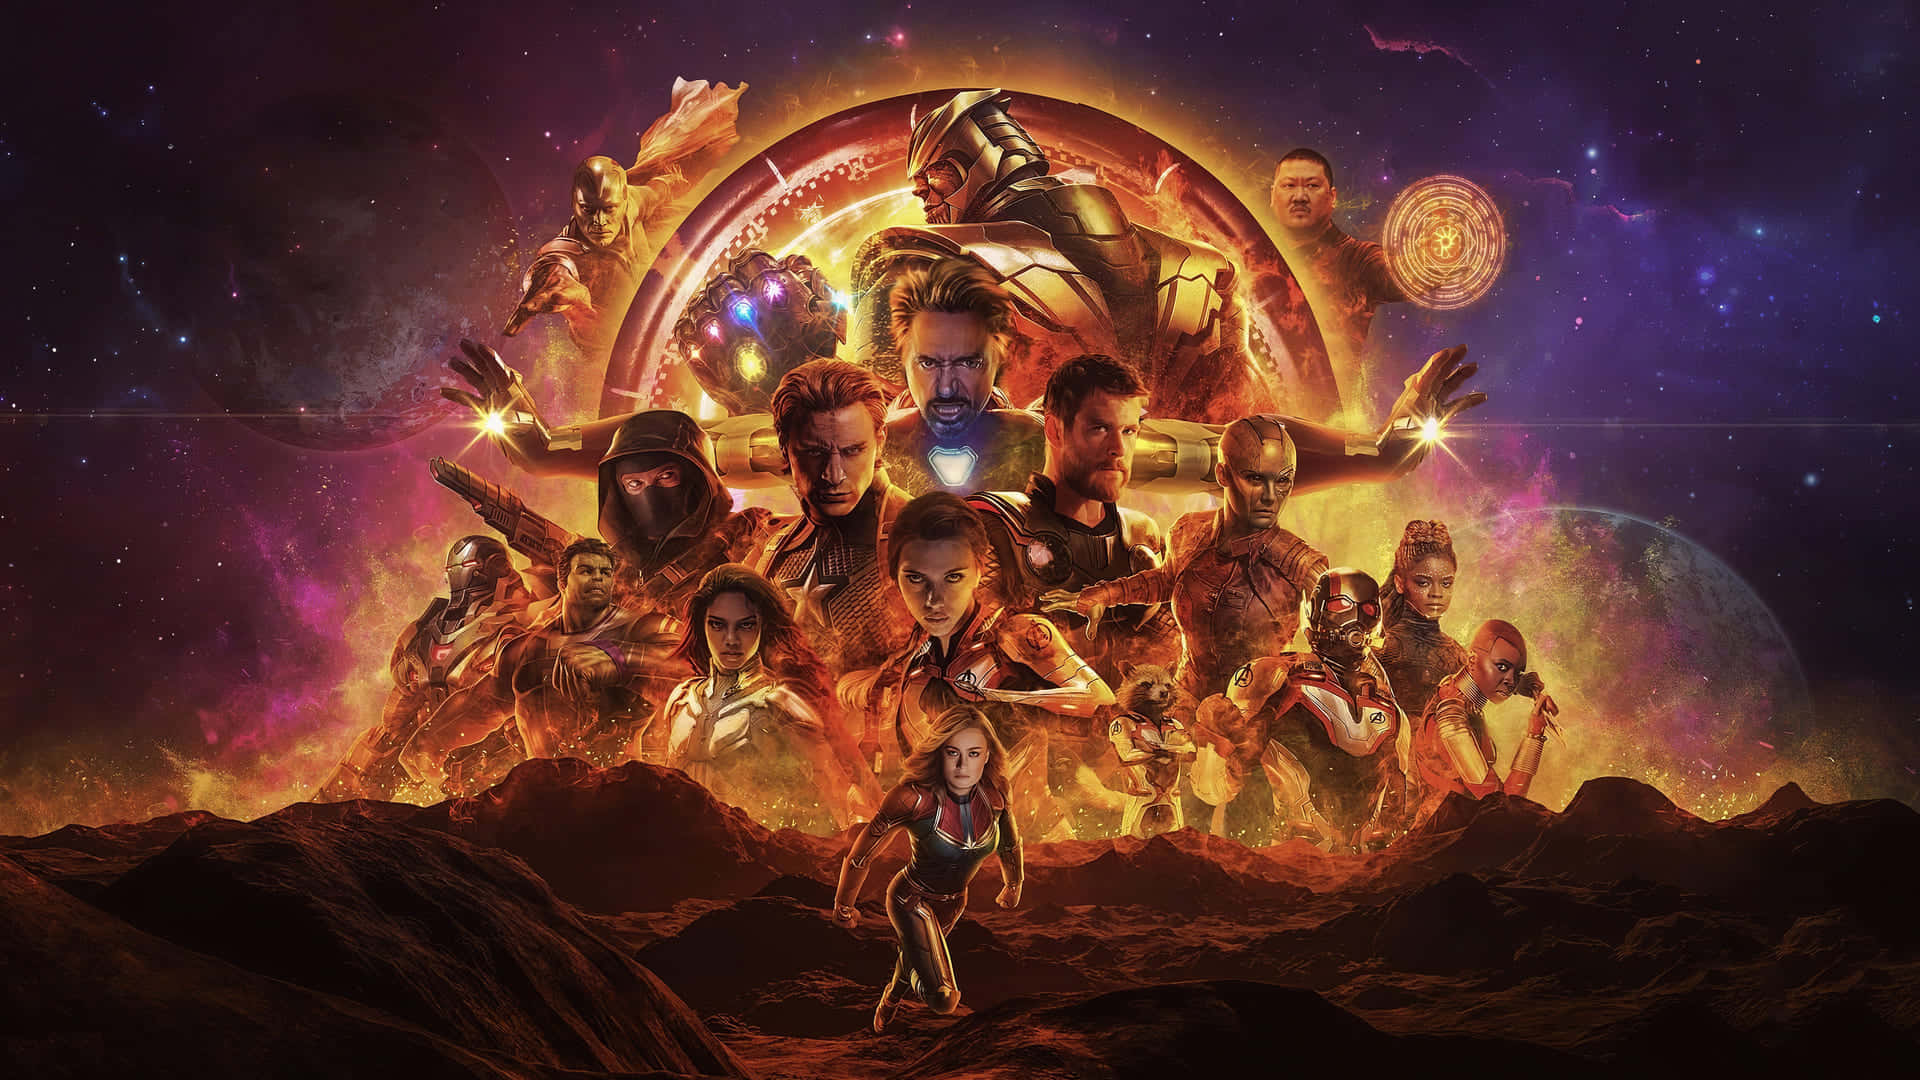 The Final Battle, Avengers Endgame